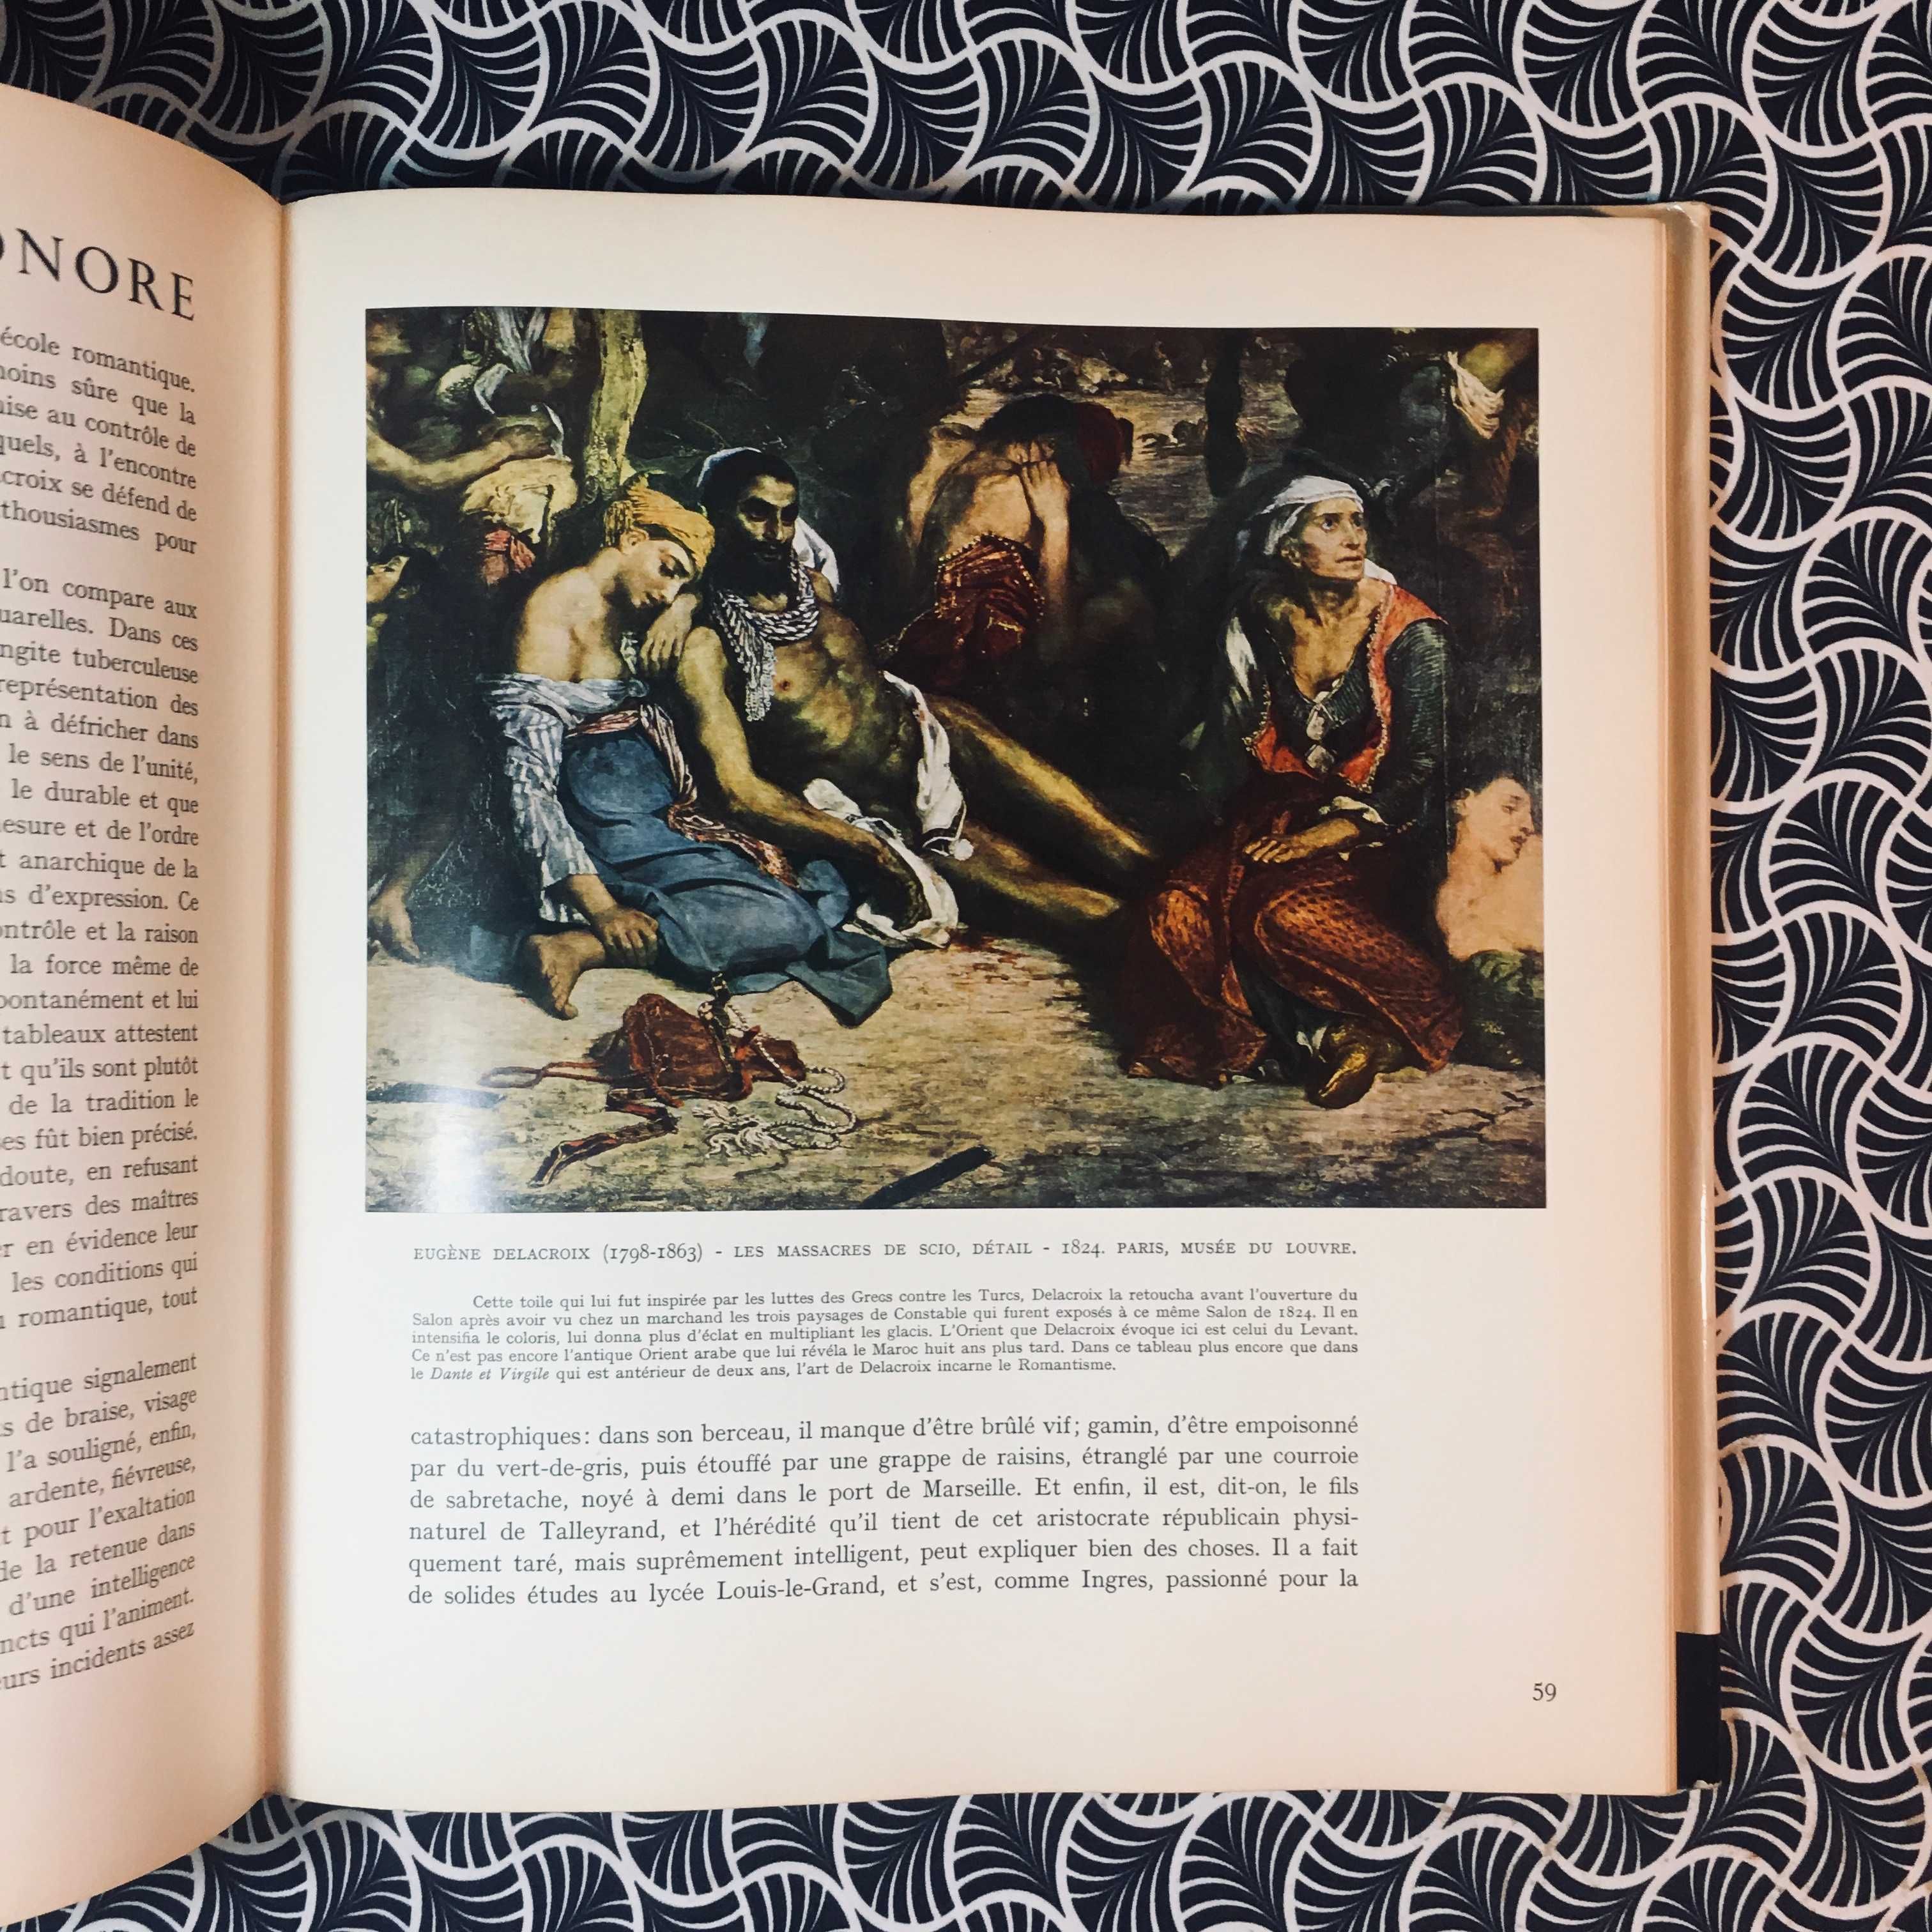 Le Dix-Neuvième Siècle: De Goya a Gauguin